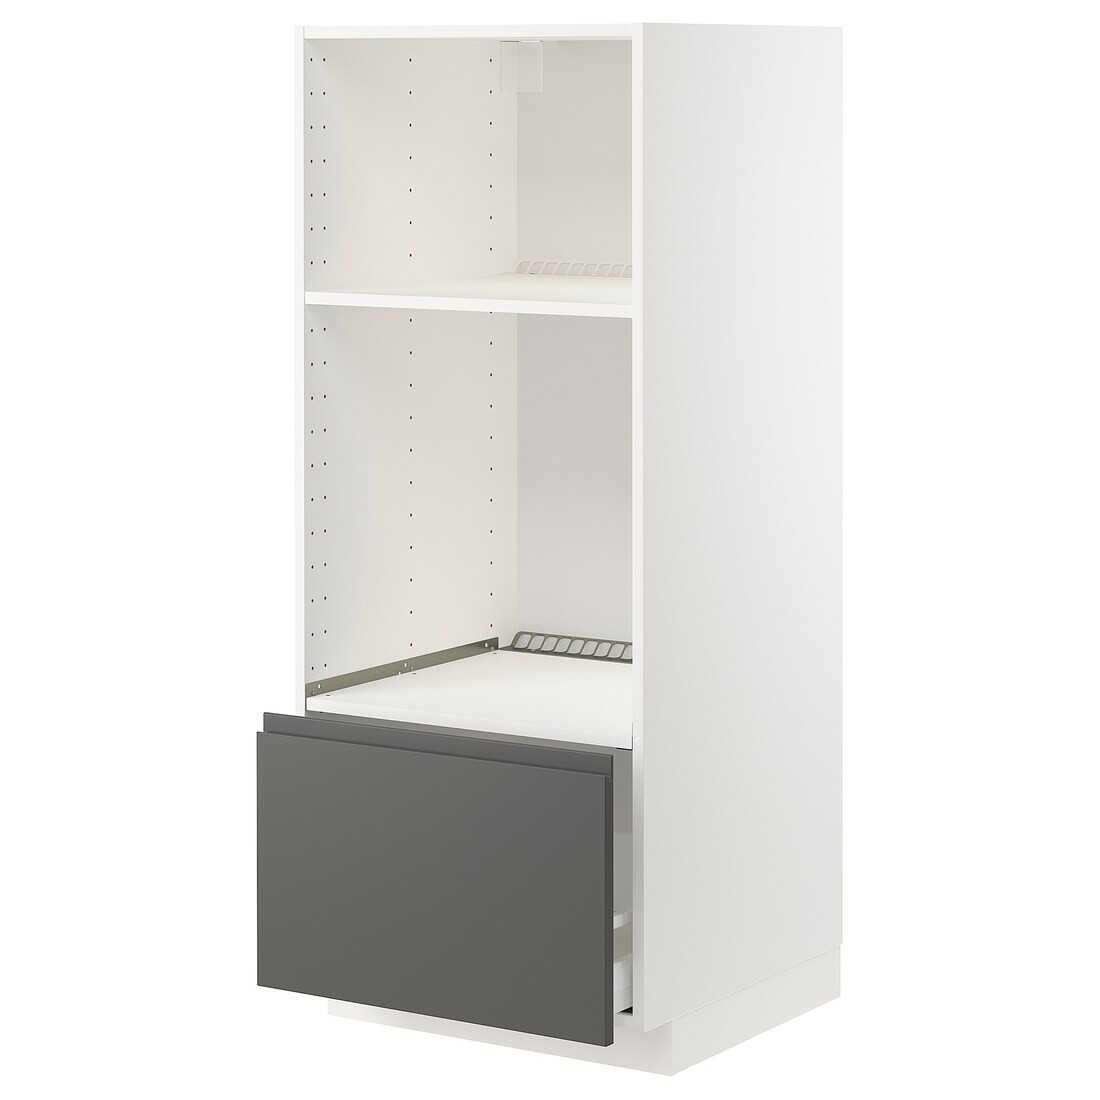 IKEA METOD МЕТОД / MAXIMERA МАКСИМЕРА Высокий шкаф для духовки / СВЧ, белый / Voxtorp темно-серый, 60x60x140 см 69310514 693.105.14